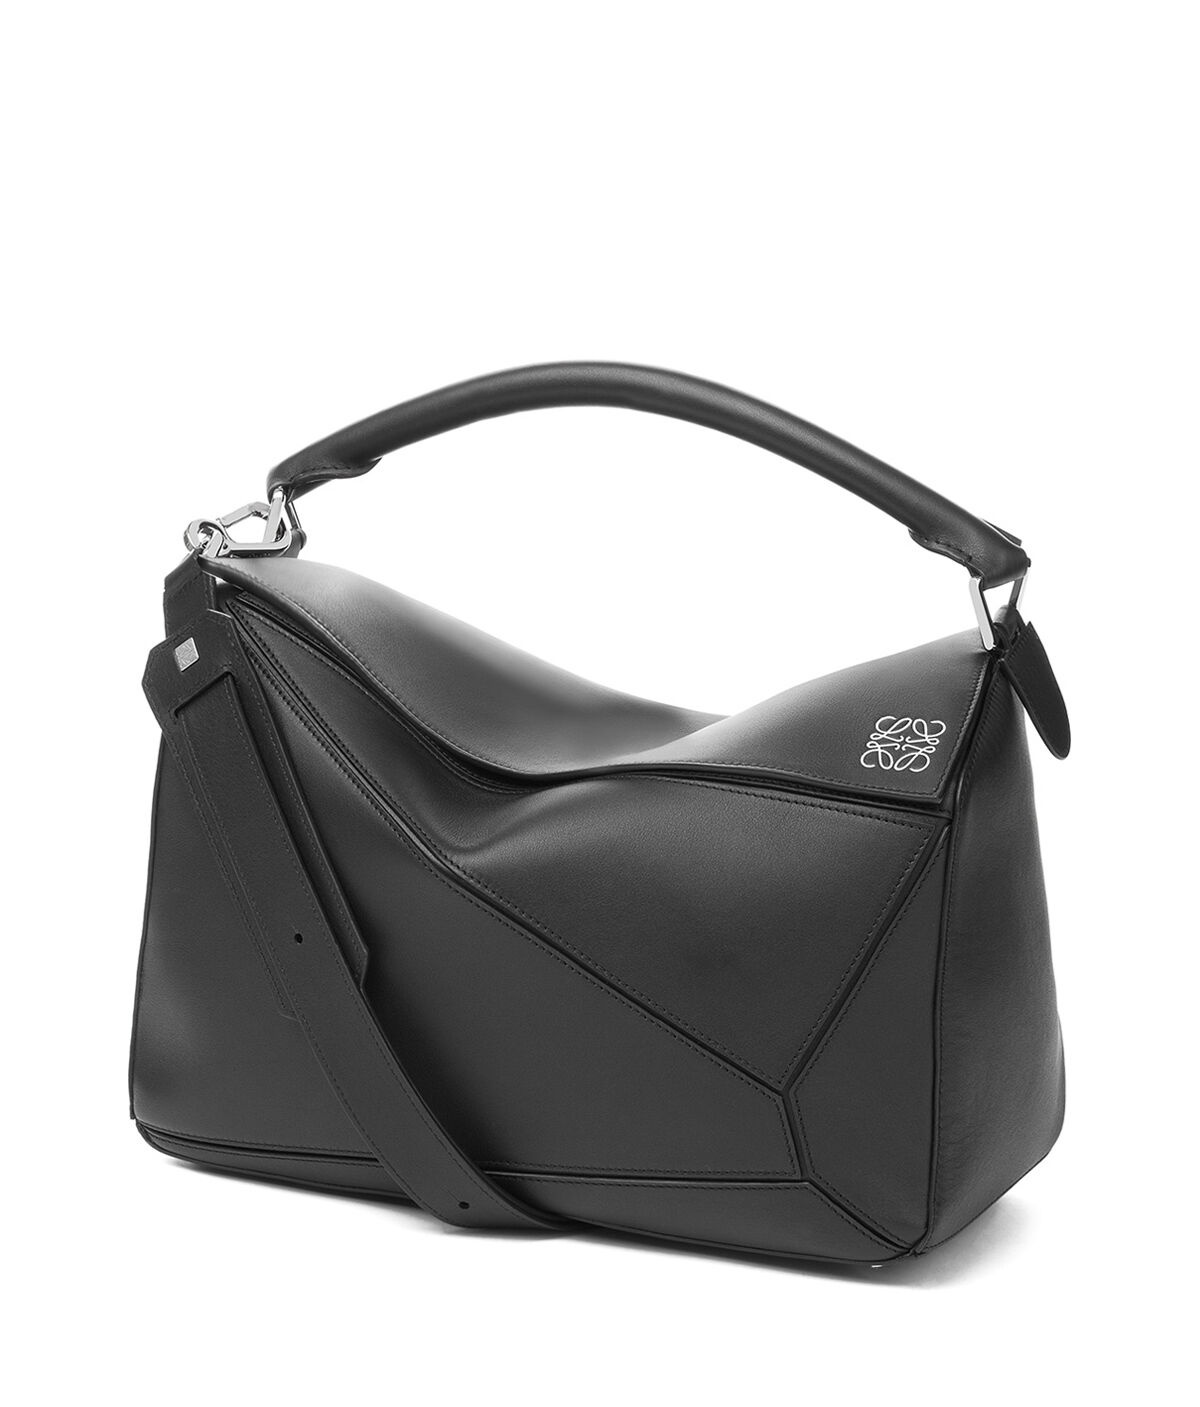 Loewe Large 'puzzle' Bag in Black